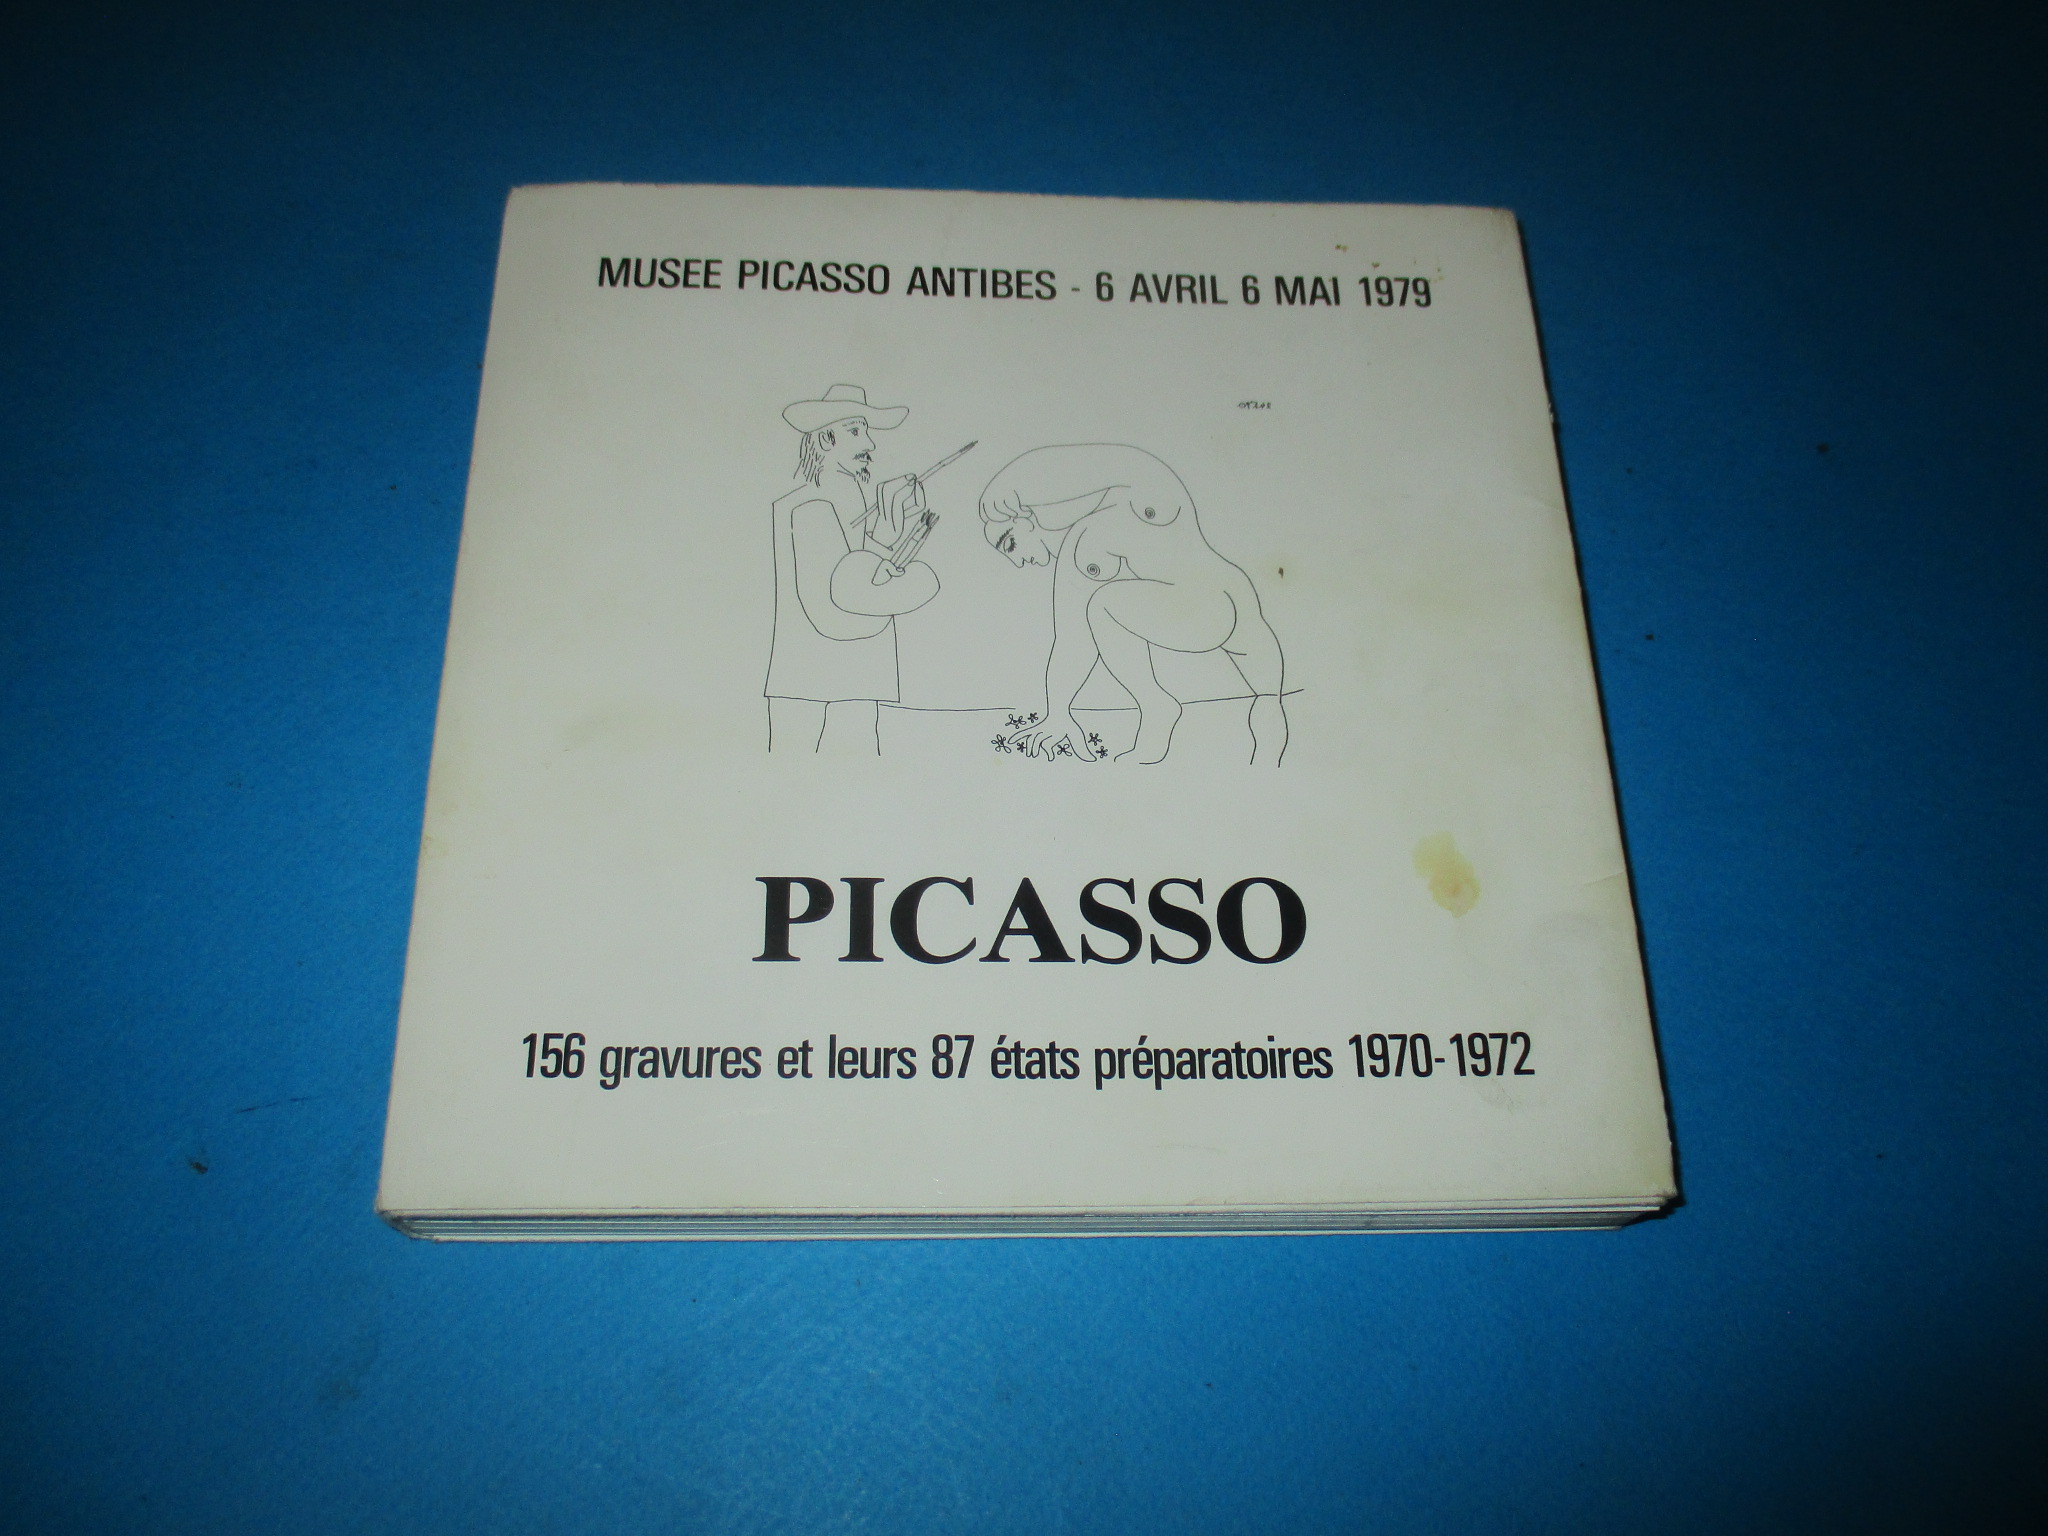 Picasso, 156 gravures et leurs 87 états préparatoires 1970-1972, Musée Picasso Antibes